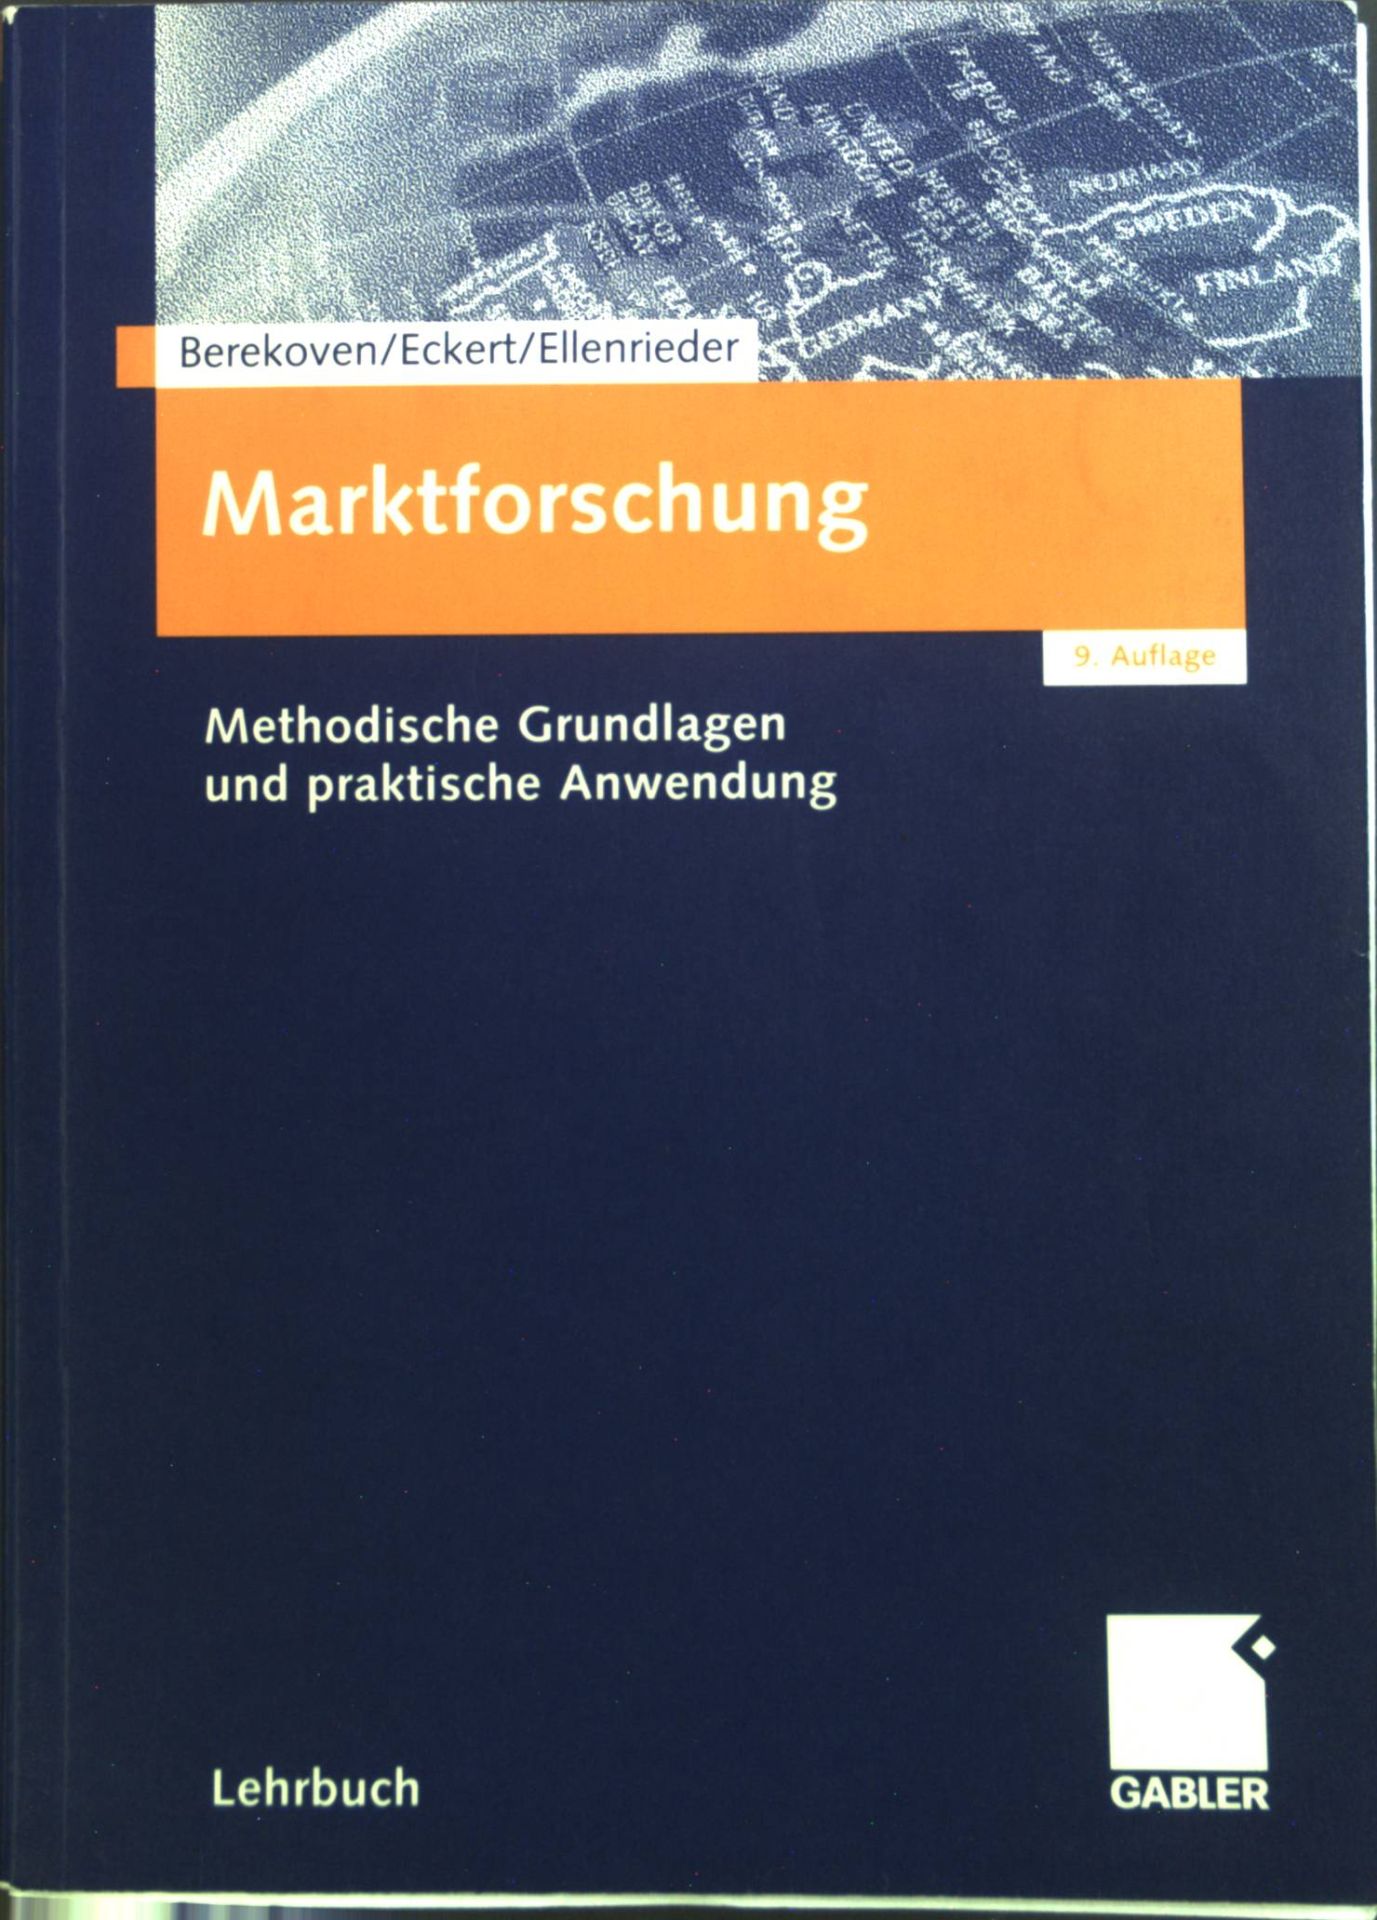 Marktforschung : Methodische Grundlagen und praktische Anwendung. - Berekoven, Ludwig, Werner Eckert und Peter Ellenrieder